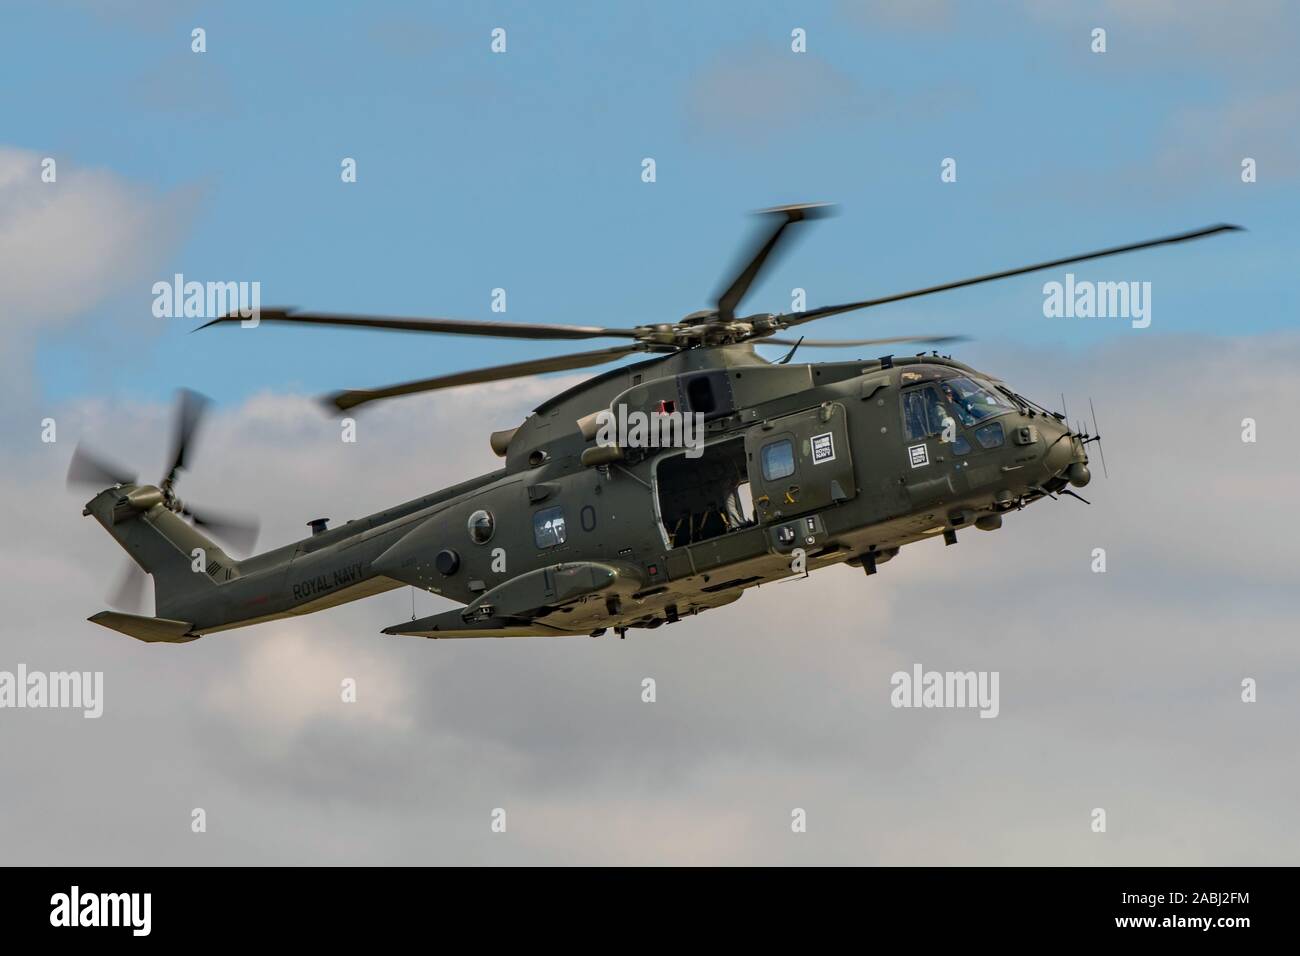 La Marine royale hélicoptère Merlin HC3 ont pris part à la manifestation à l'assaut du commando Yeovilton Royaume-uni tiendra la Journée de l'air, le 13 juillet 2019. Banque D'Images